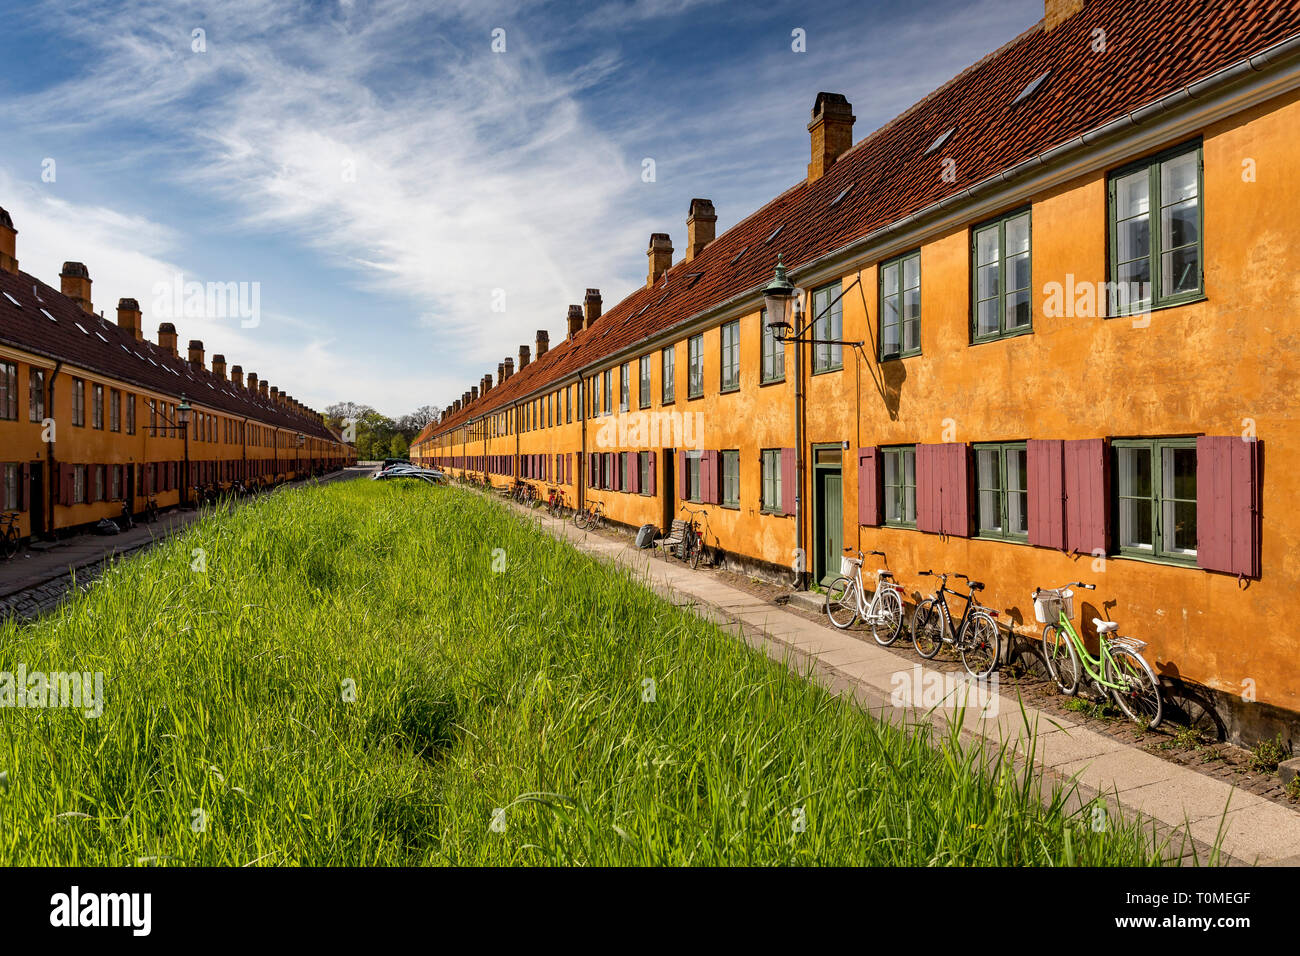 Residential buildings in Nyboder, Copenhagen, Denmark Stock Photo